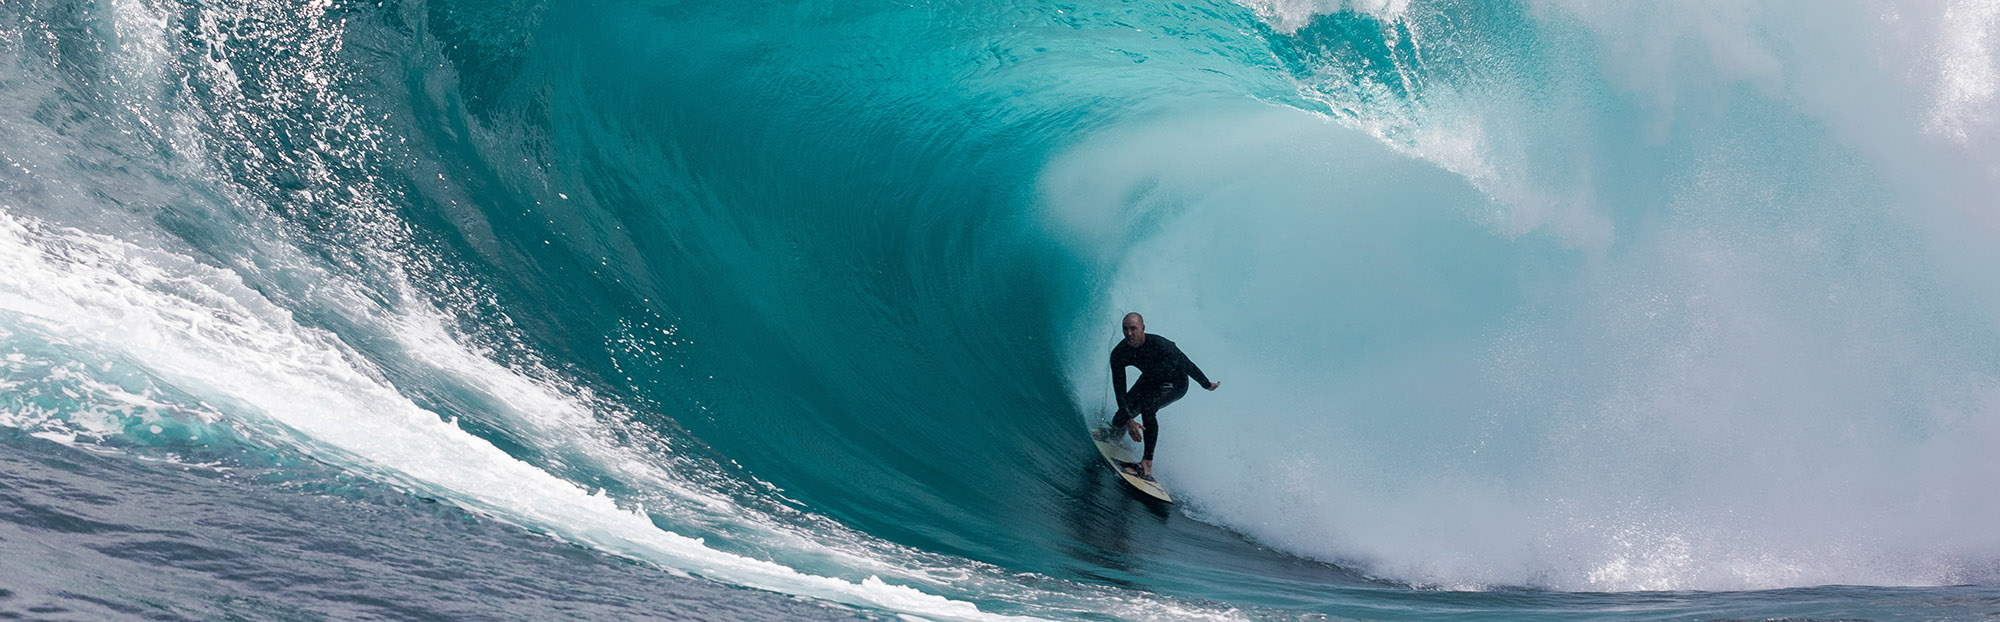 Surfer in einer sich brechenden Welle